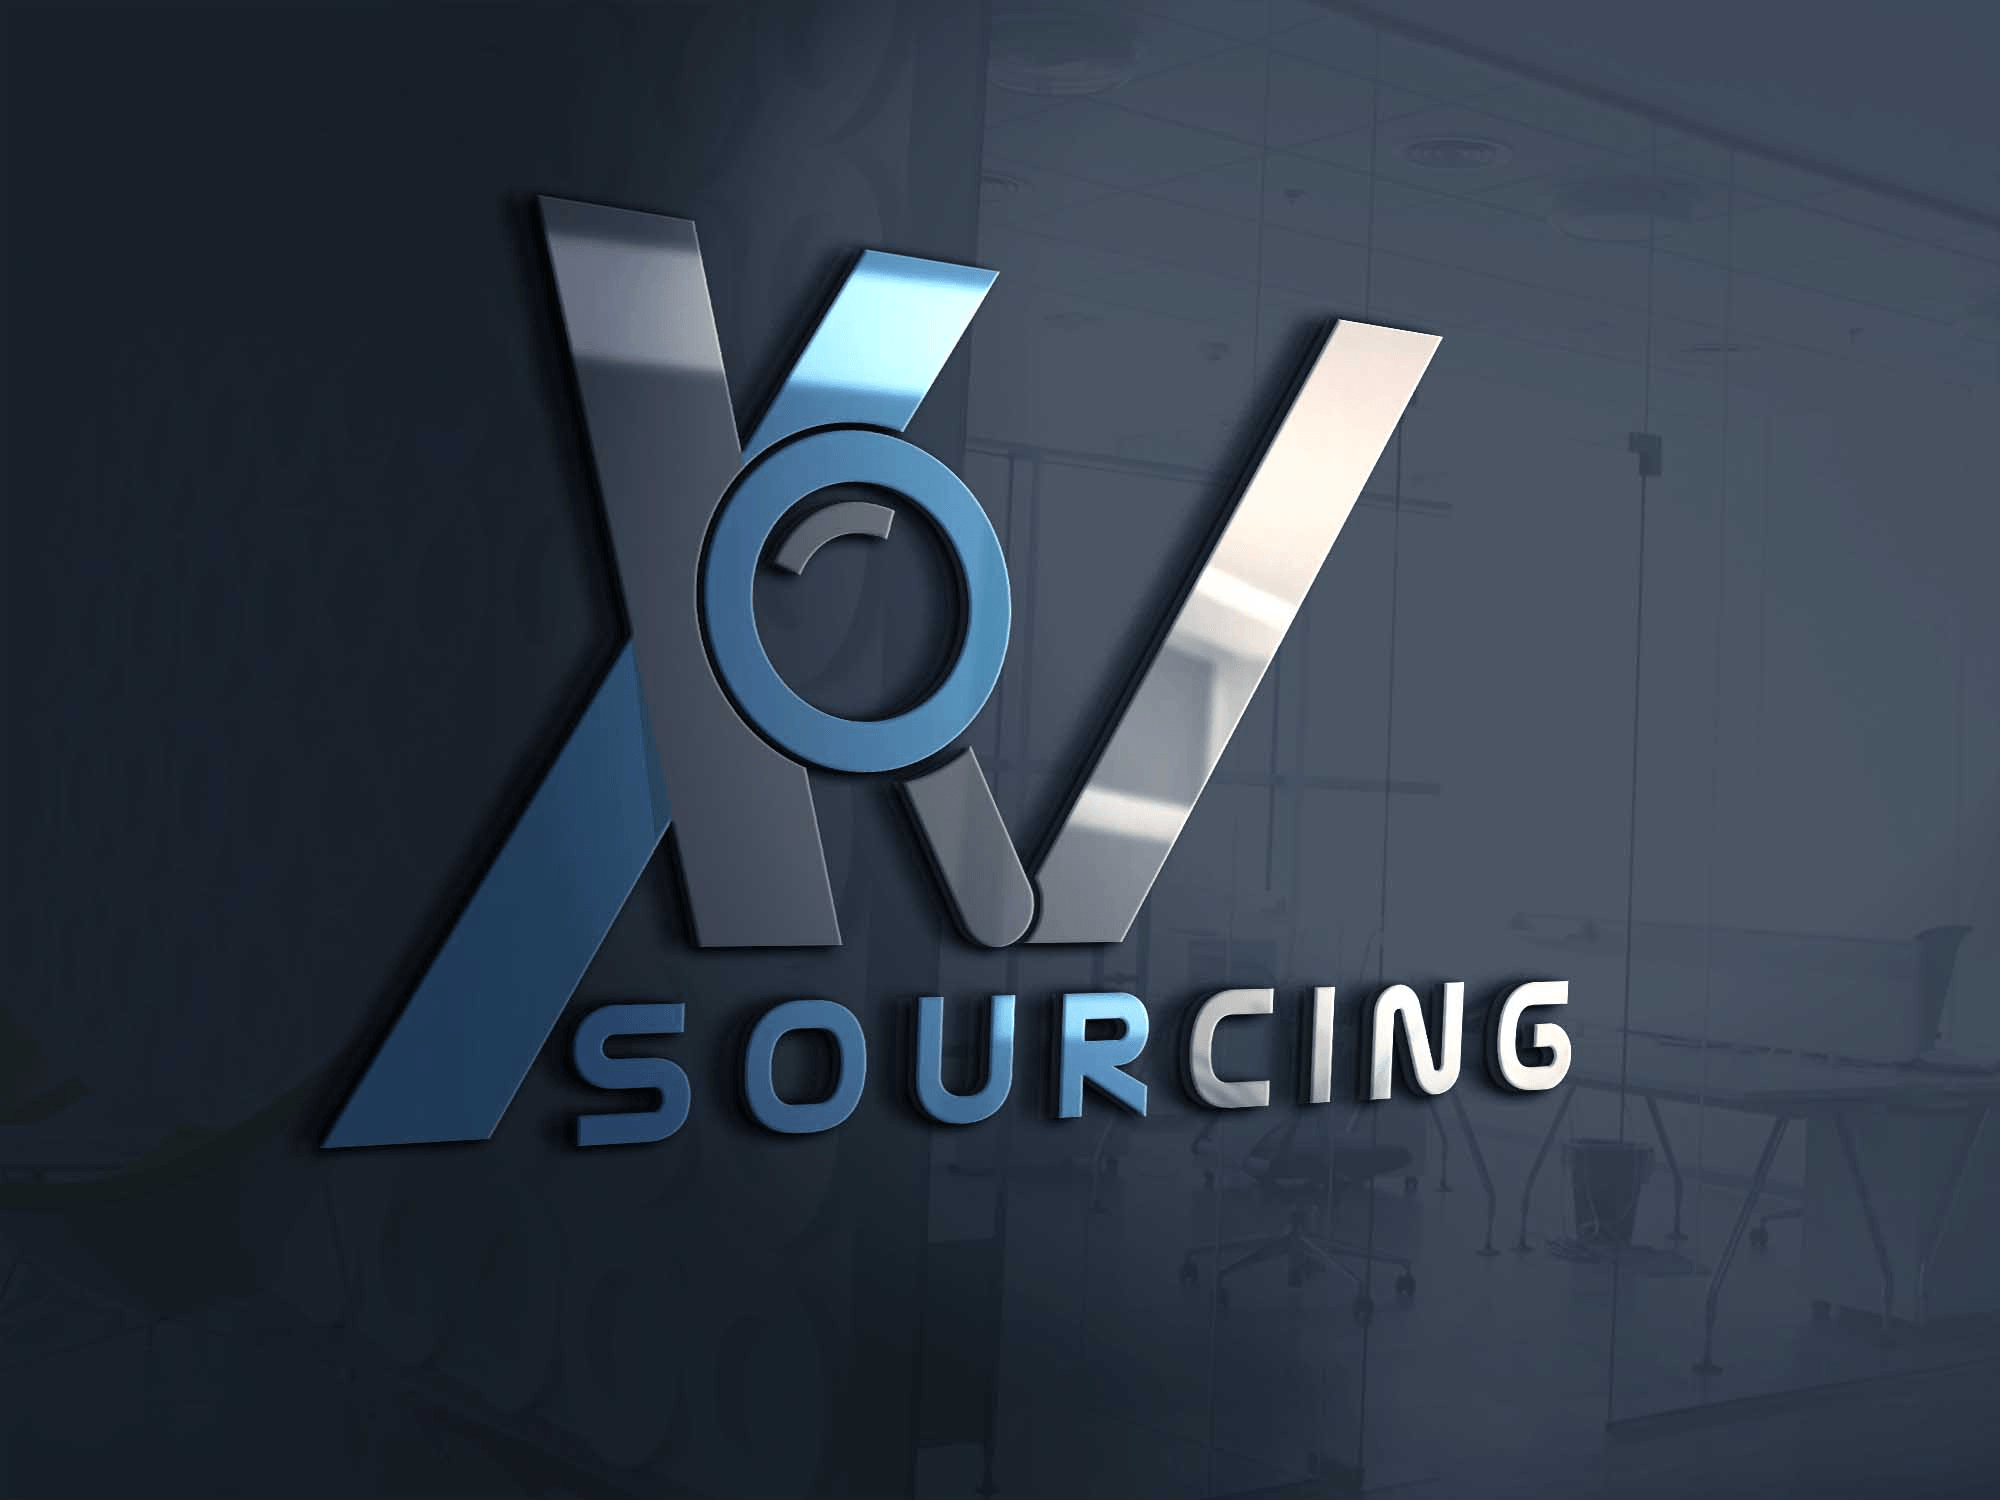 XV Logo - Logo Design Contests » XV Sourcing Logo Design » Design No. 60 by ...